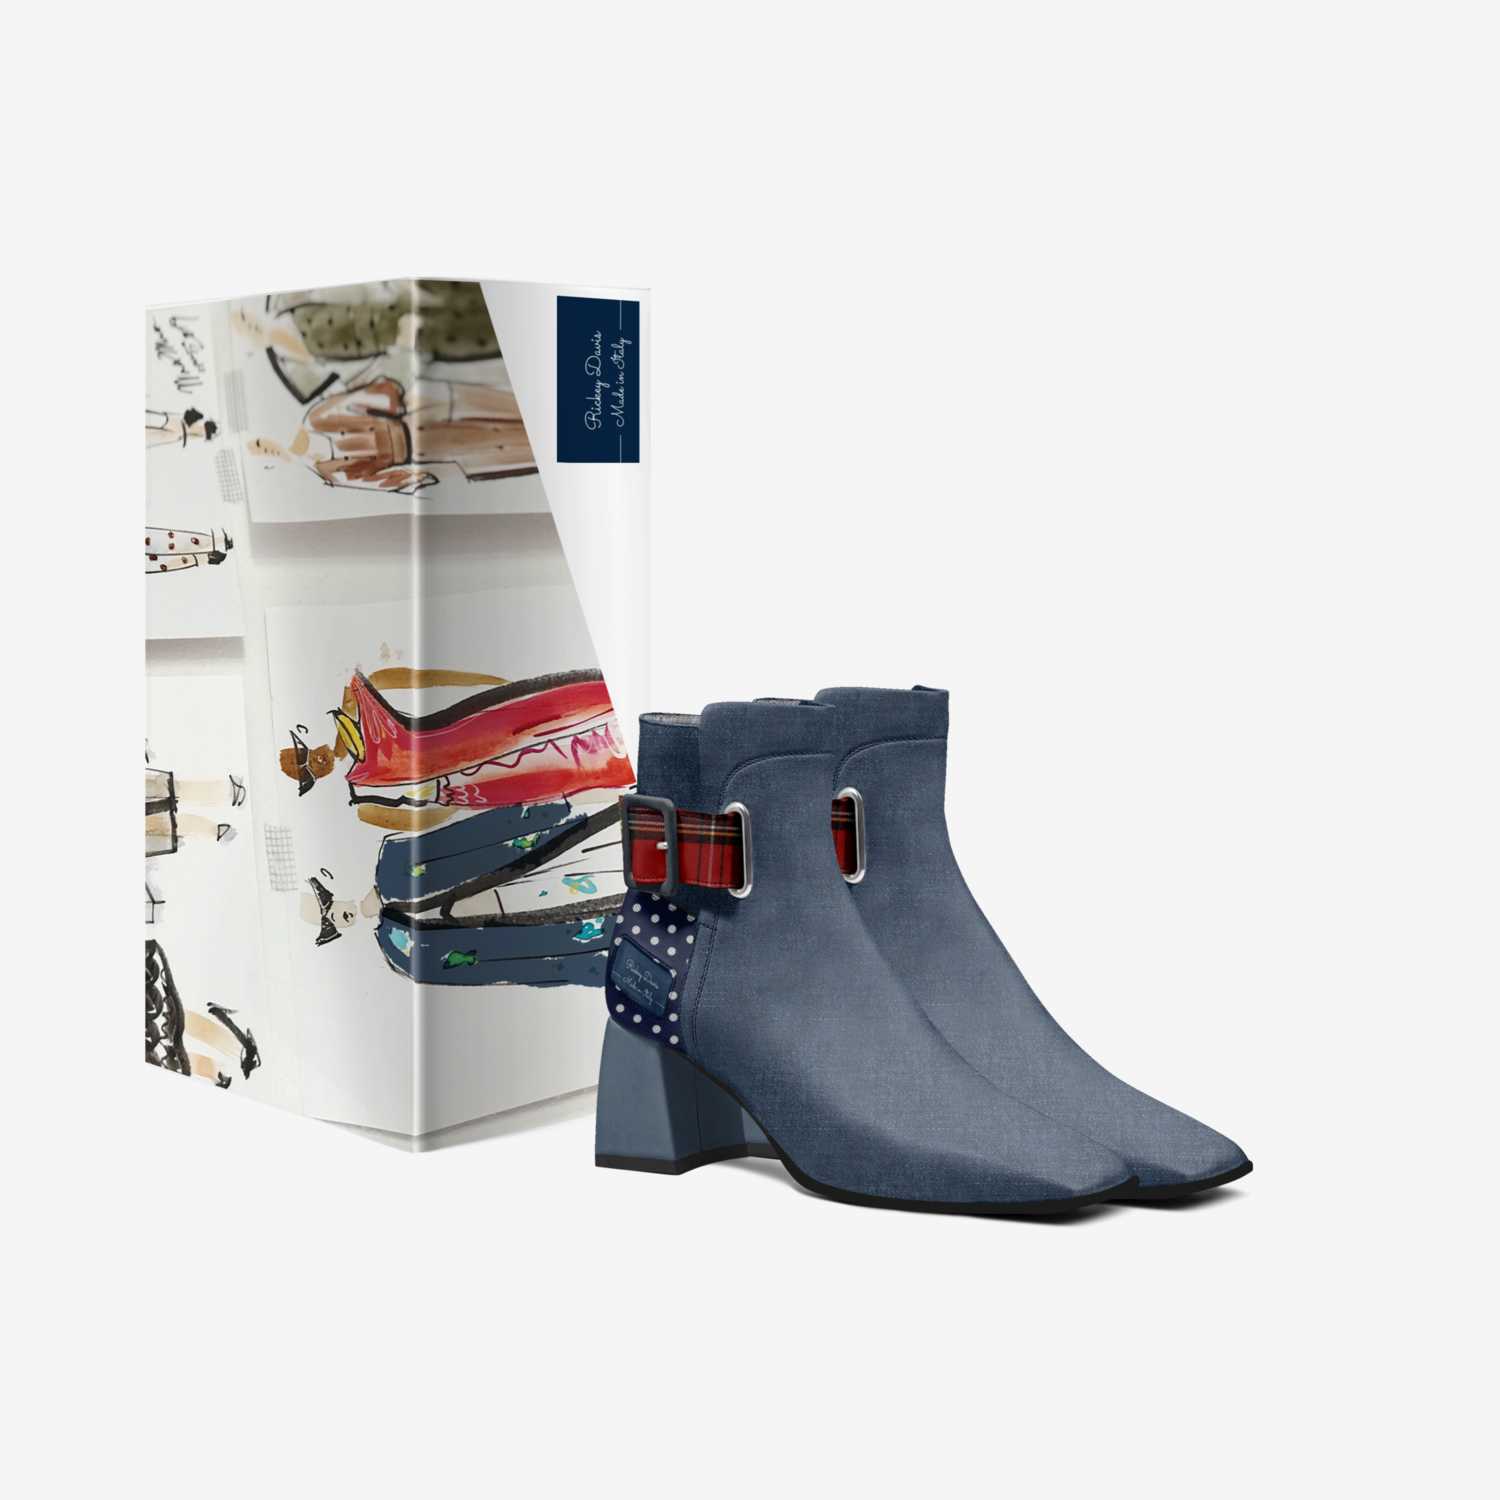 Rickey Davis custom made in Italy shoes by Rickey Davis | Box view